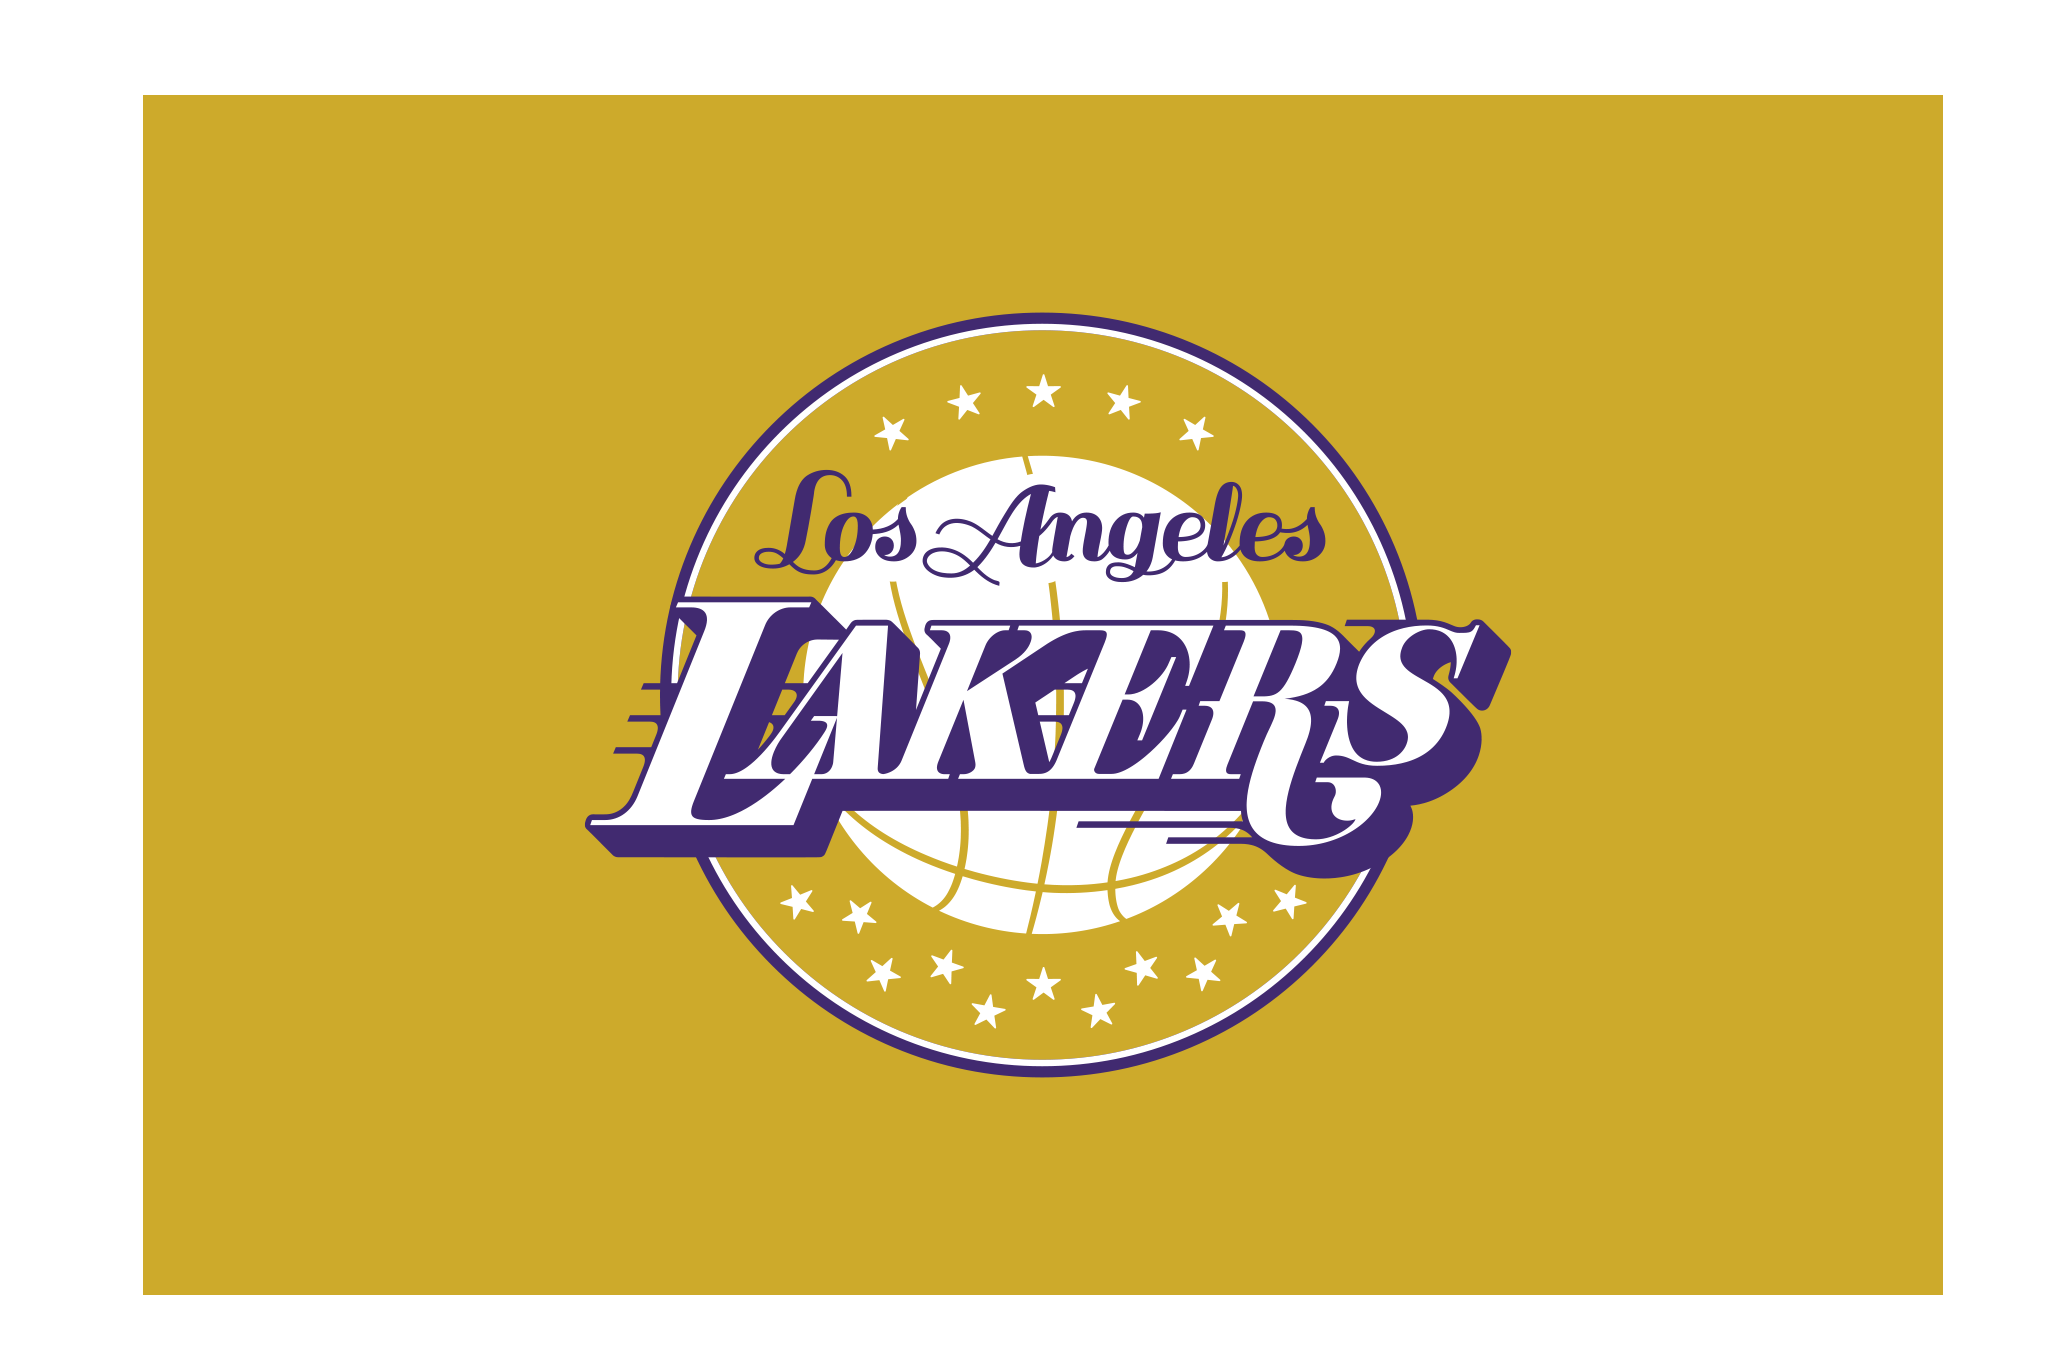 Лост анджелес текст френдли. Лос-Анджелес Лейкерс логотип. Лос-Анджелес Лейкерс надпись. NBA los Angeles Lakers логотип. Лос-Анджелес Лейкерс символ.